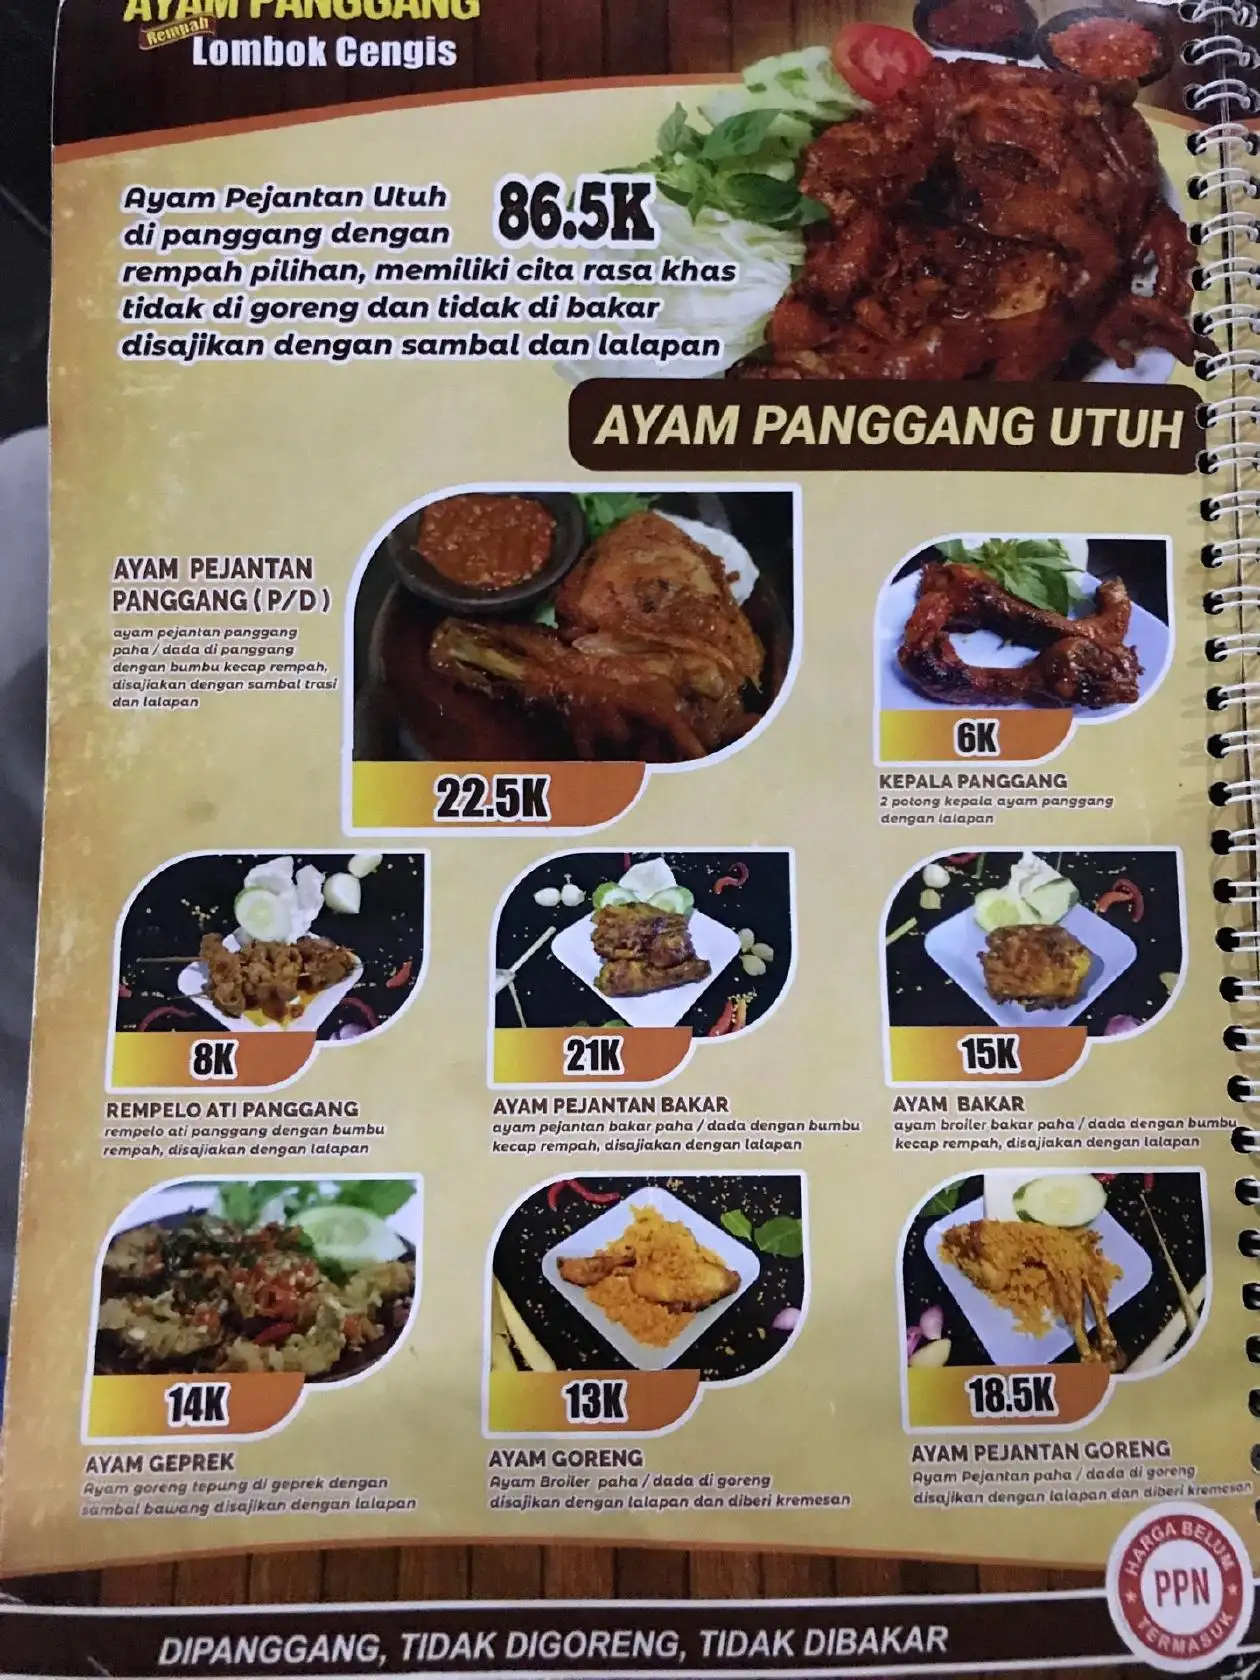 Ayam Panggang Lombok Cengis Tembalang